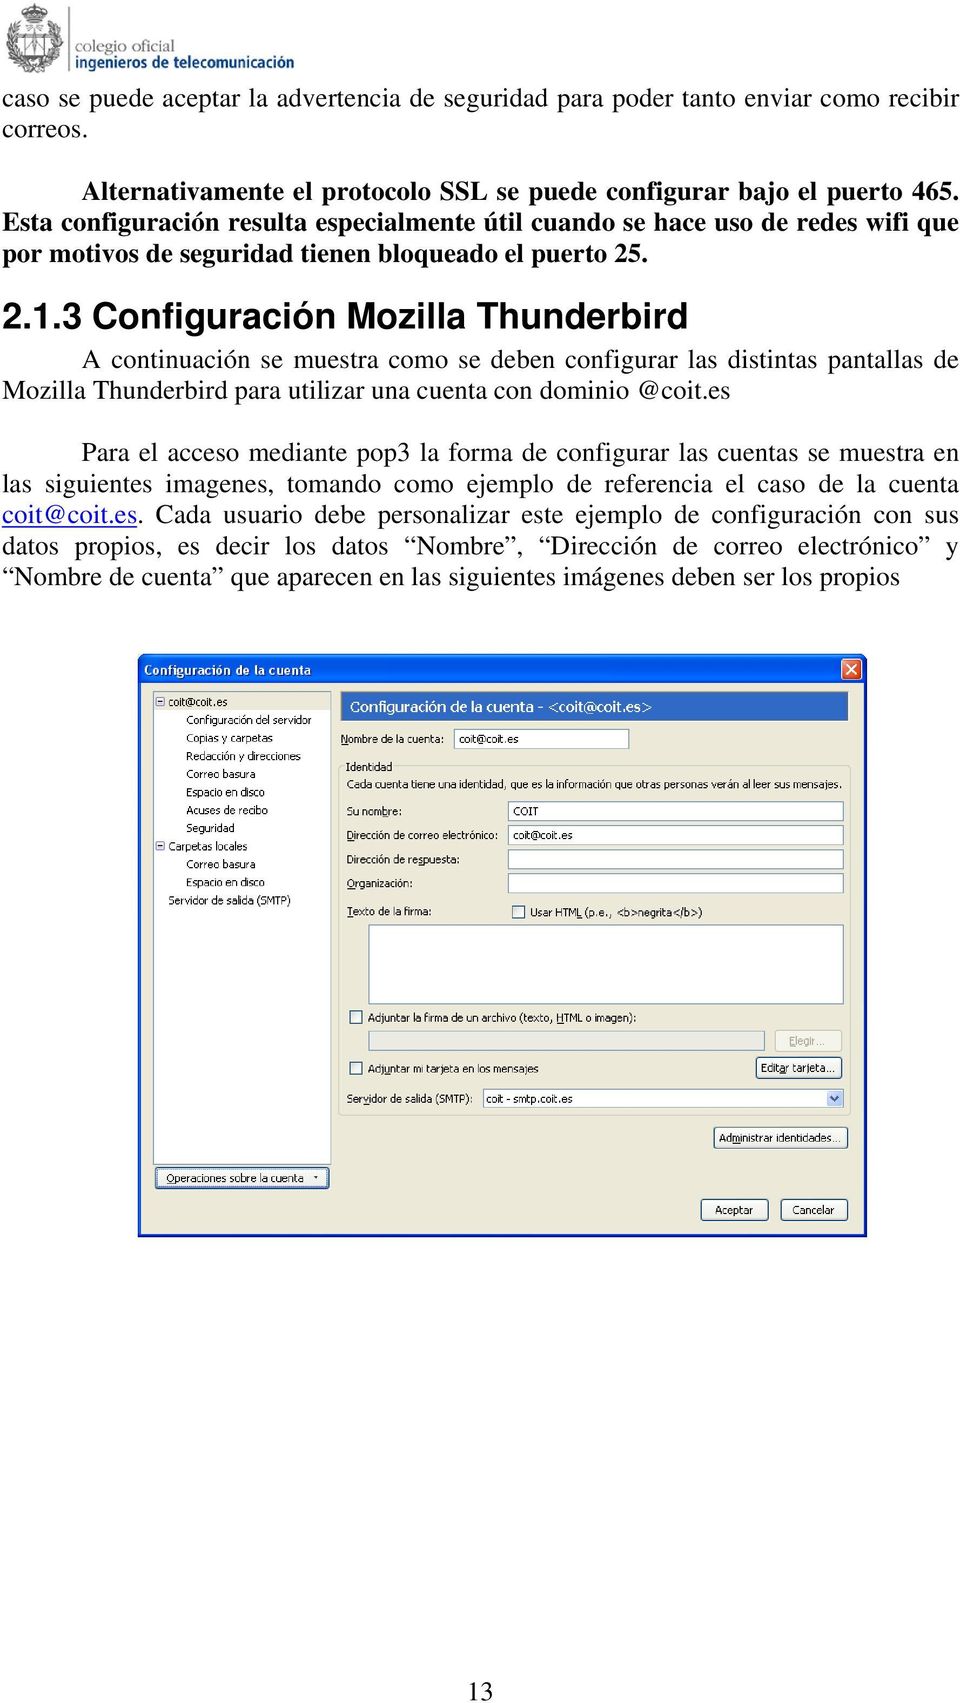 3 Configuración Mozilla Thunderbird A continuación se muestra como se deben configurar las distintas pantallas de Mozilla Thunderbird para utilizar una cuenta con dominio @coit.